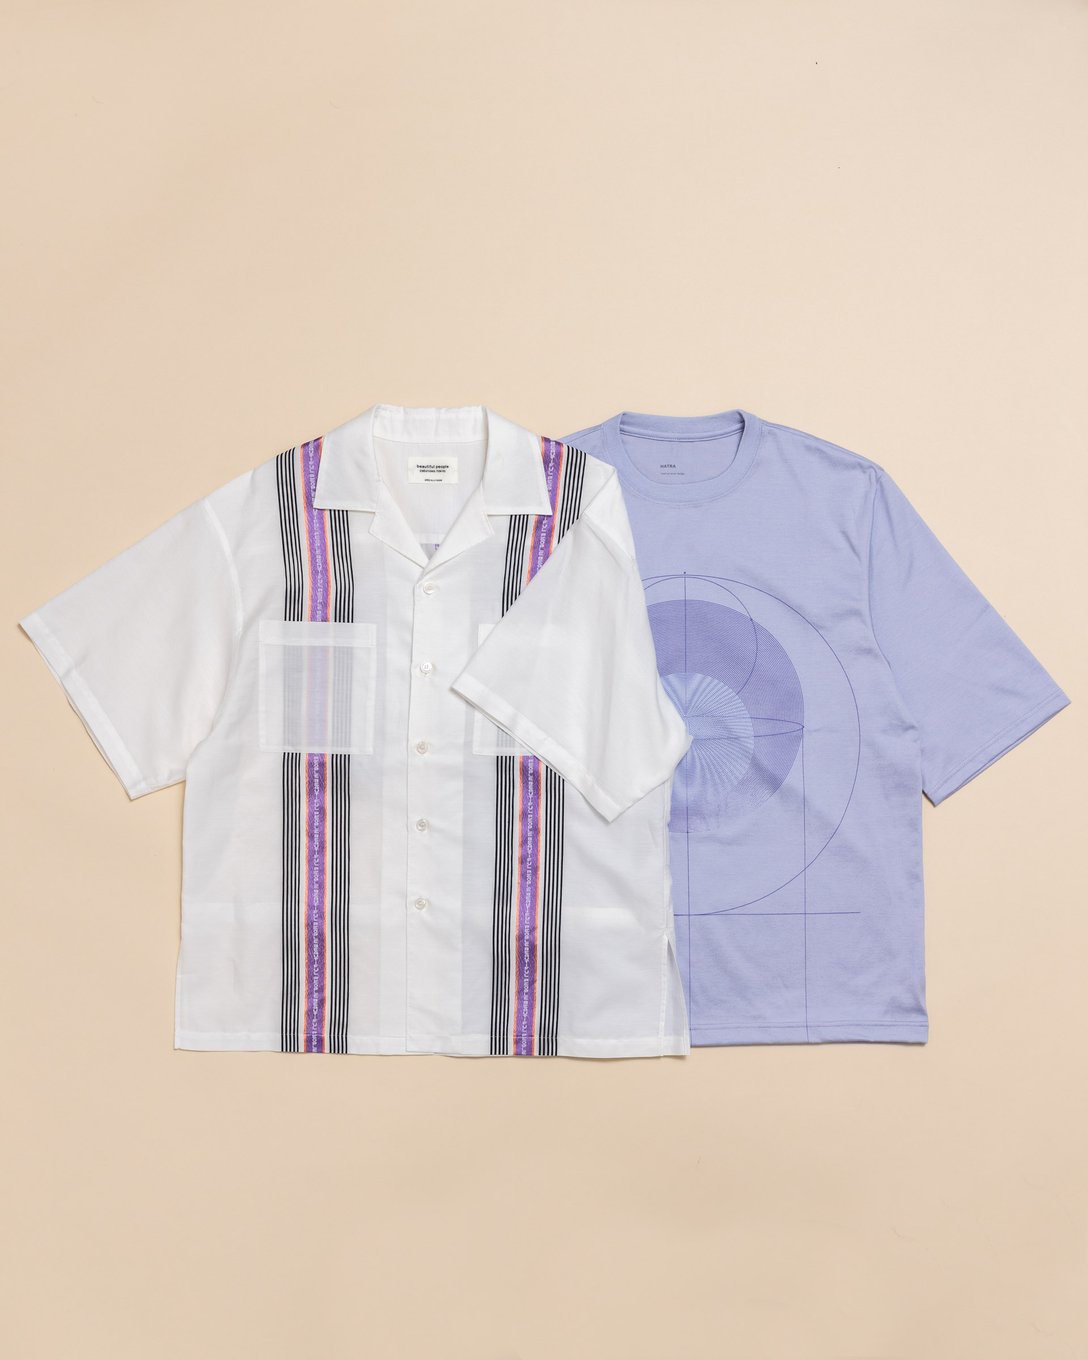 キューバシャツと紫のTシャツ